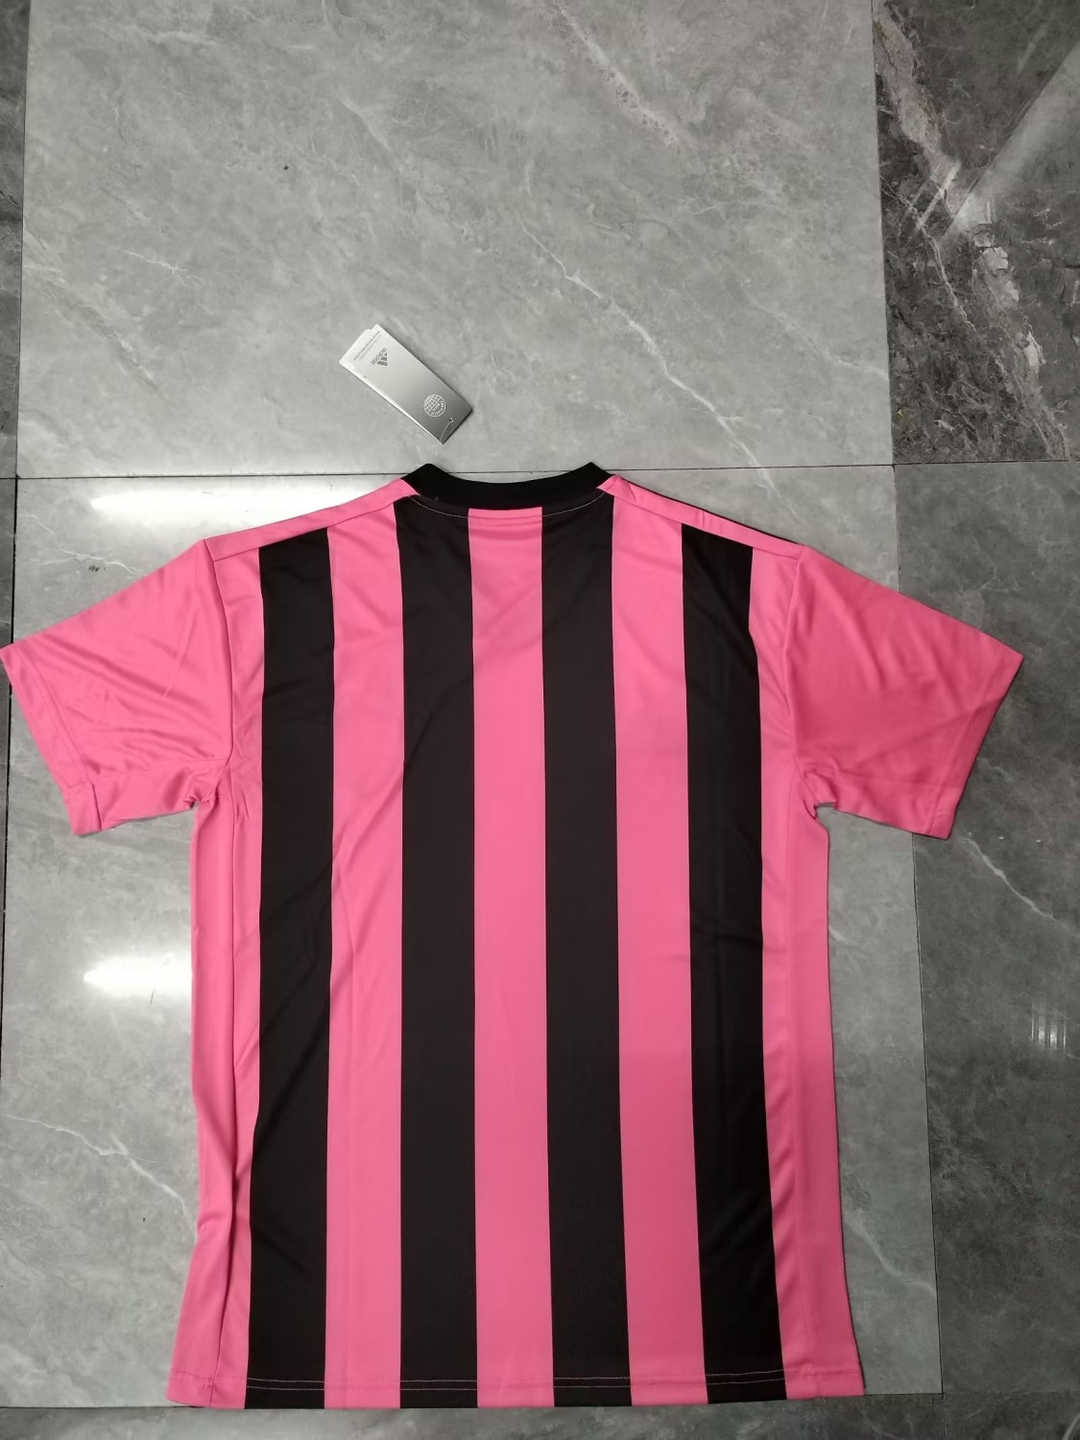 Atletico Mineiro Soccer Jersey Replica Pink 2022/23 Mens (Camisa Outubro Rosa)